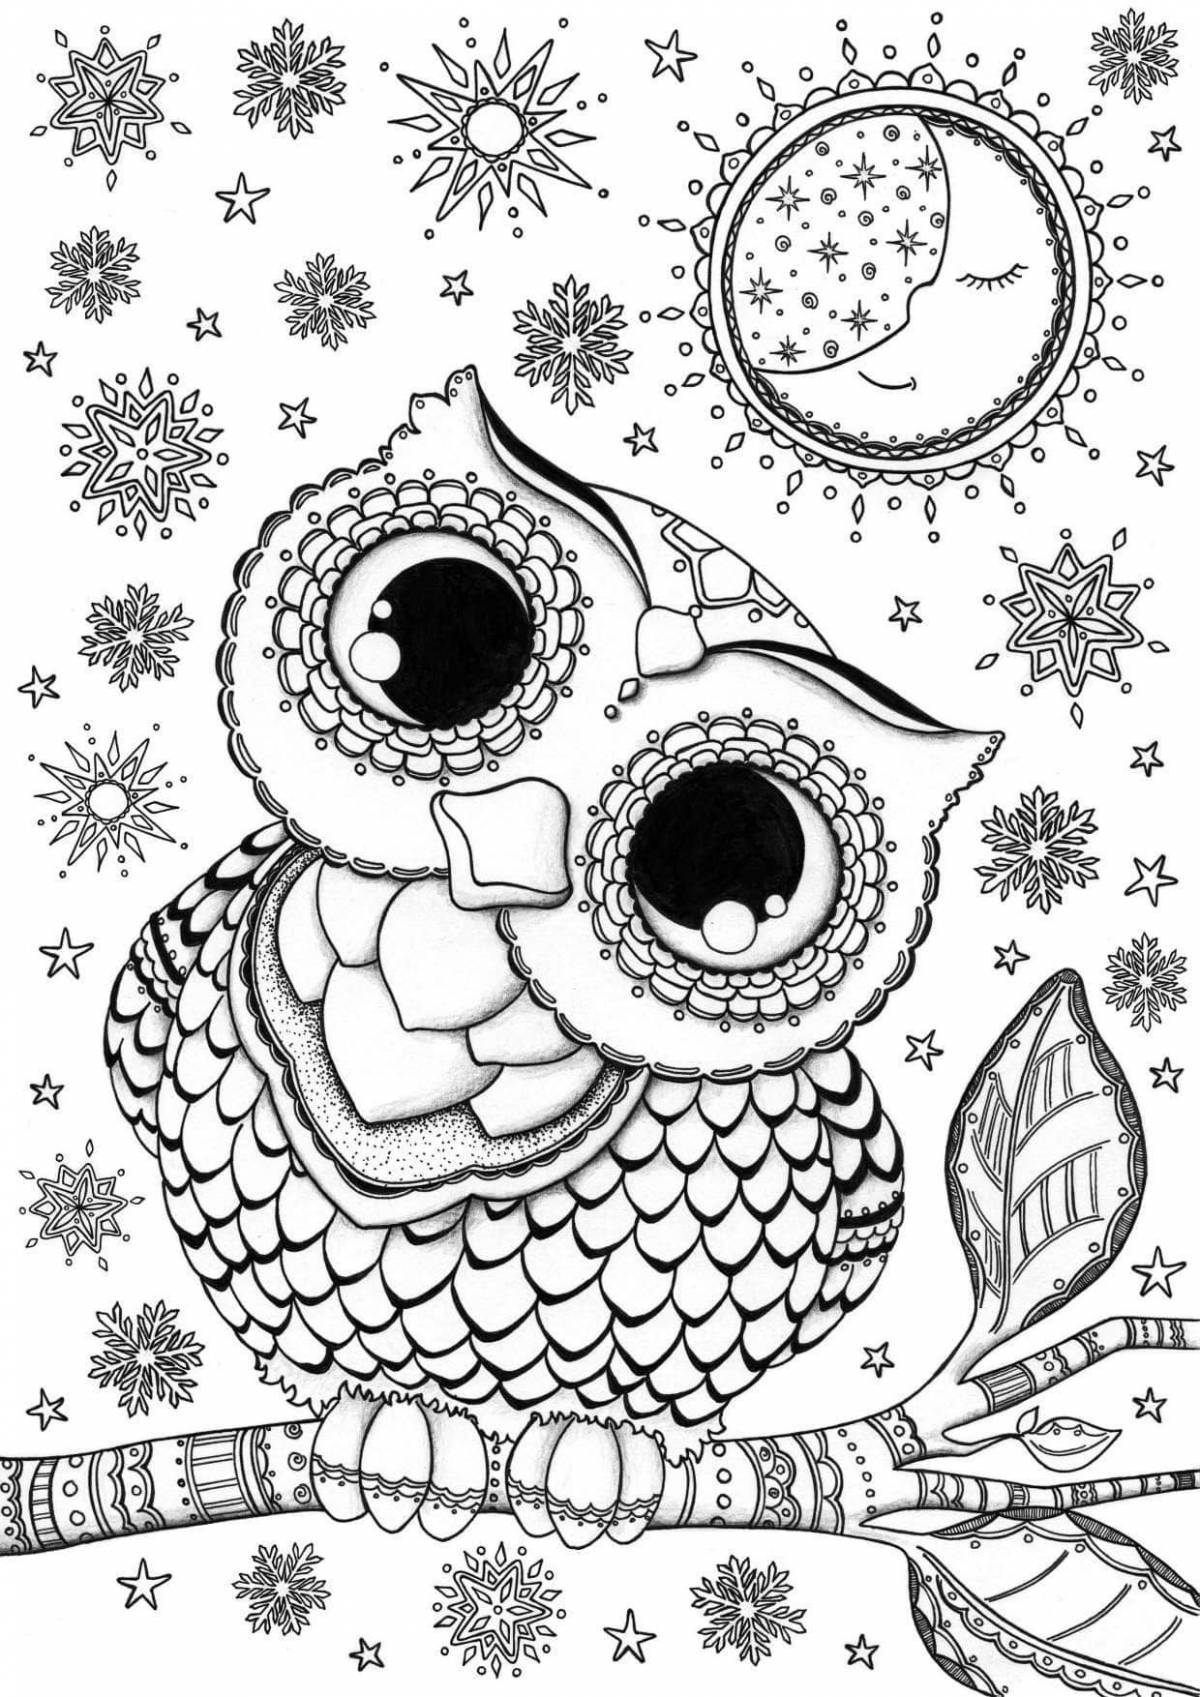 Violent owl coloring book